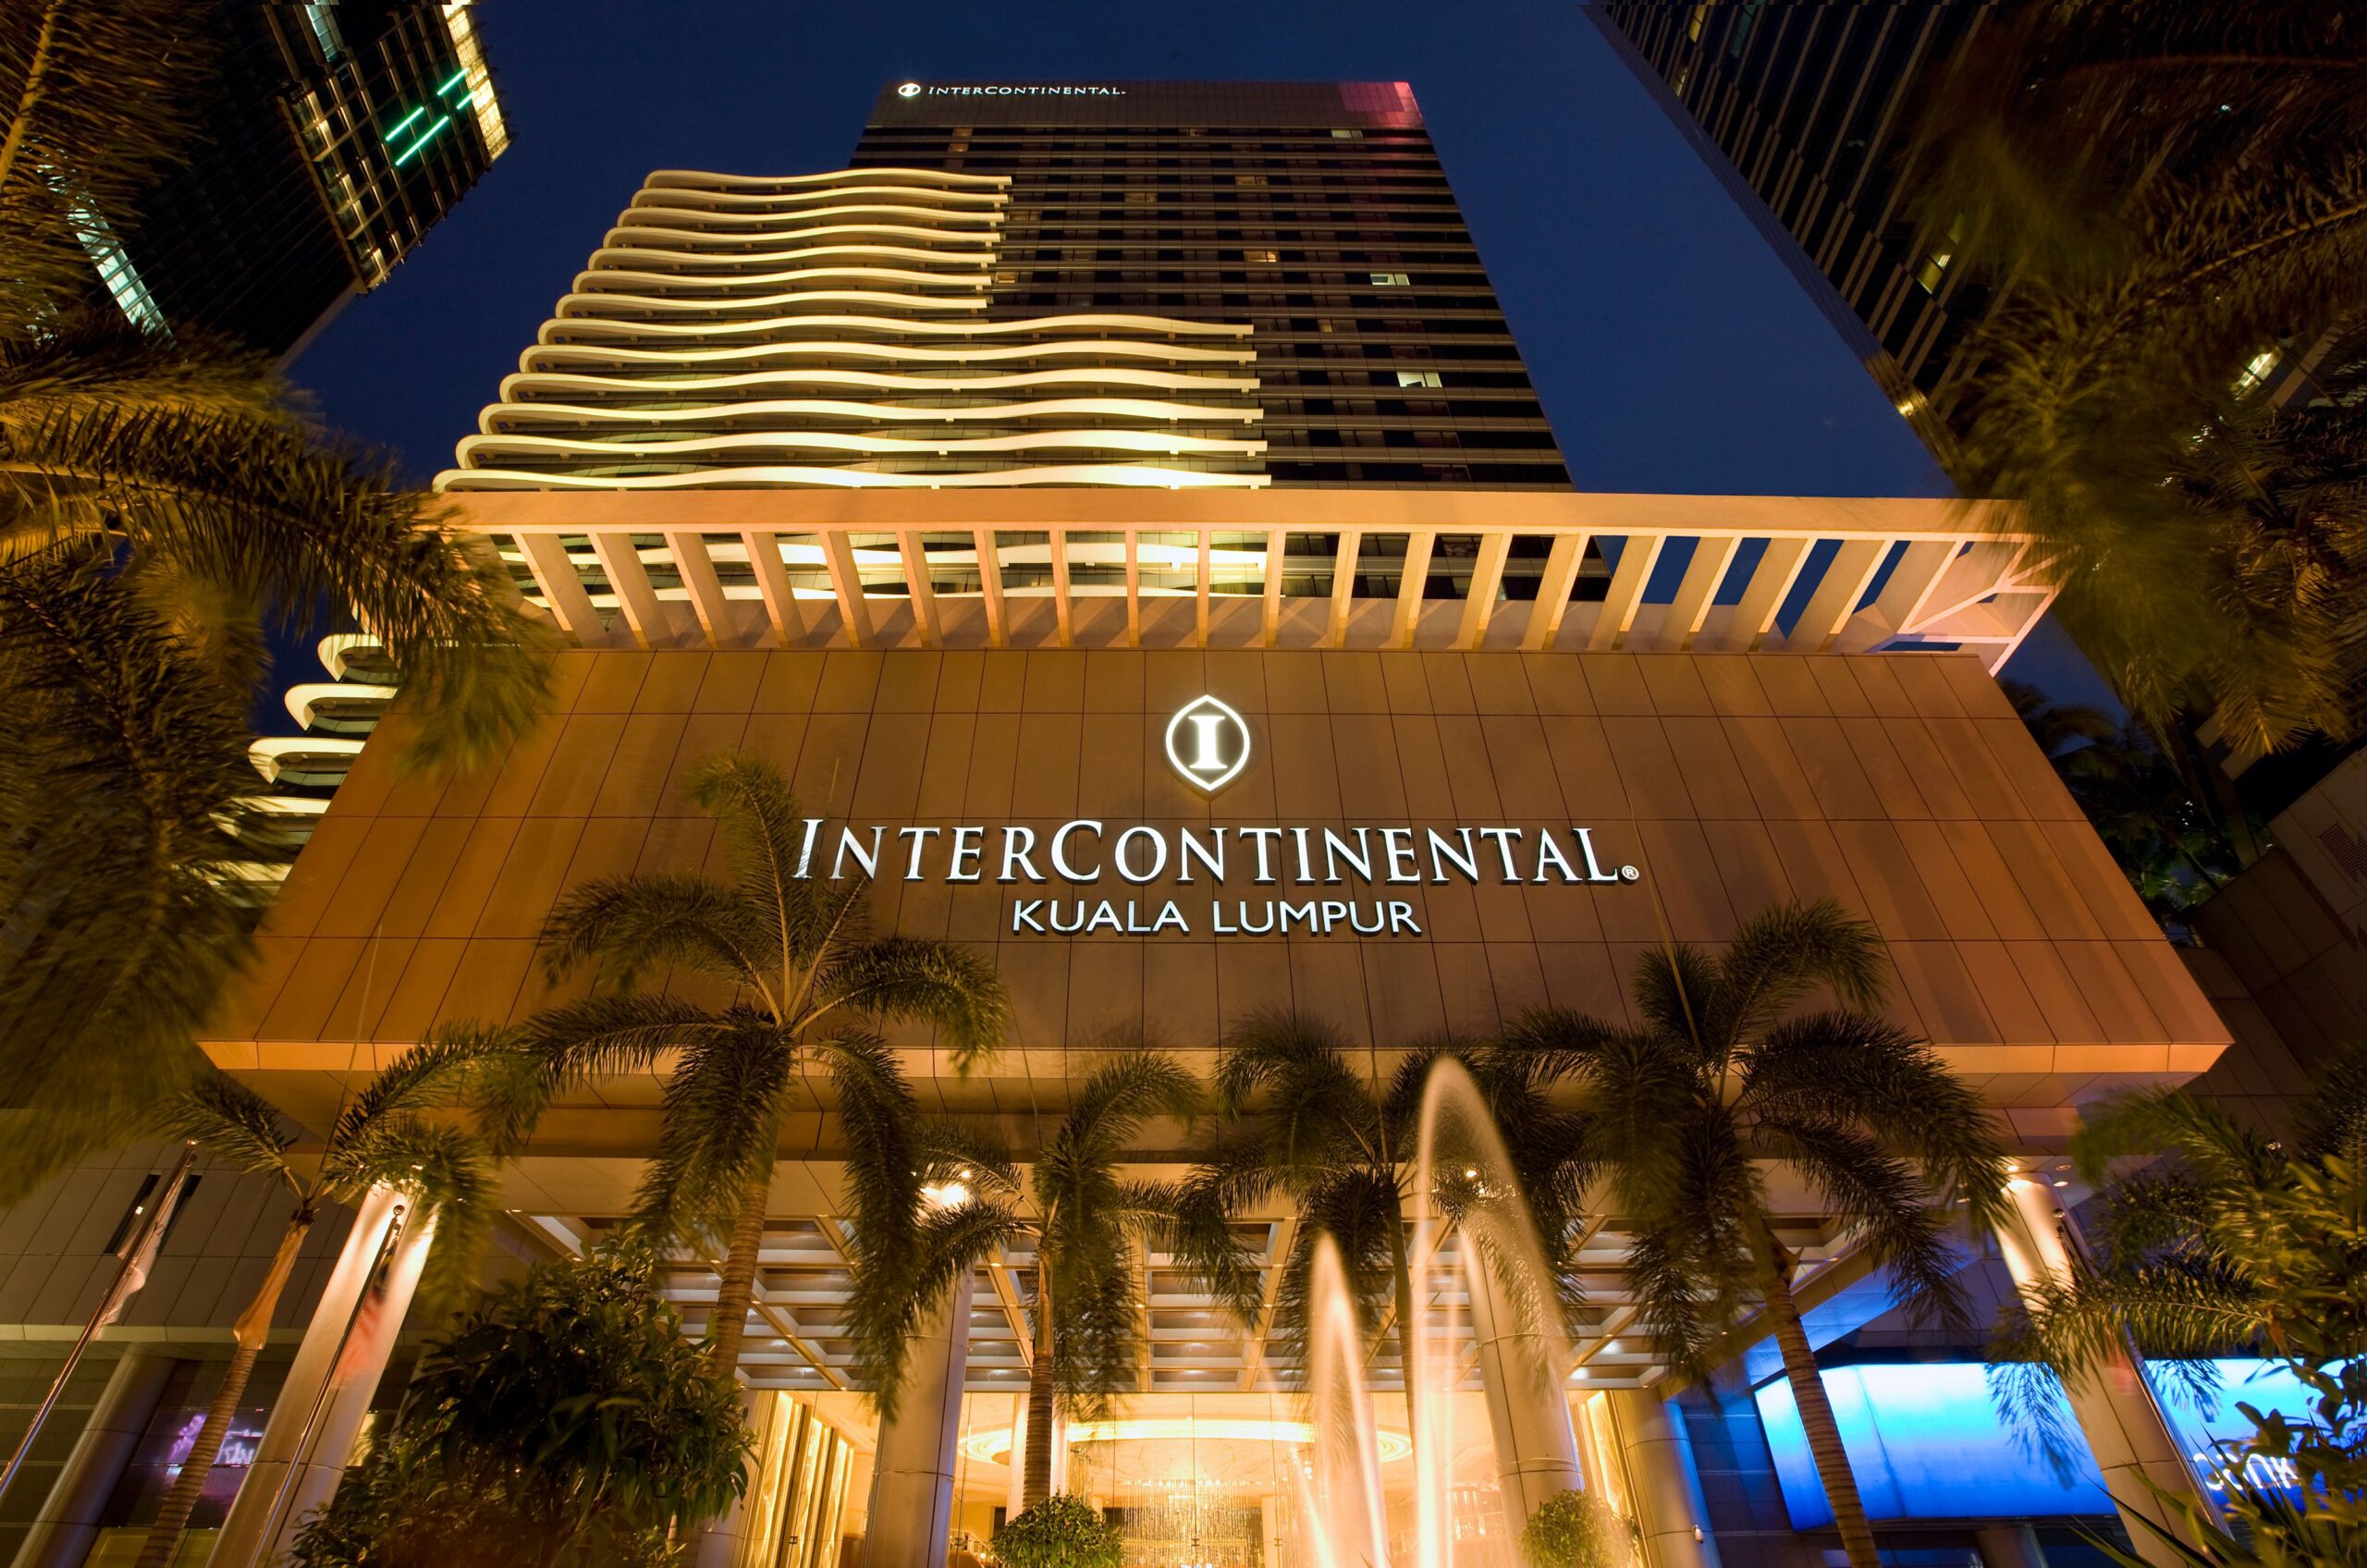 InterContinental Hotel Kuala Lumpur